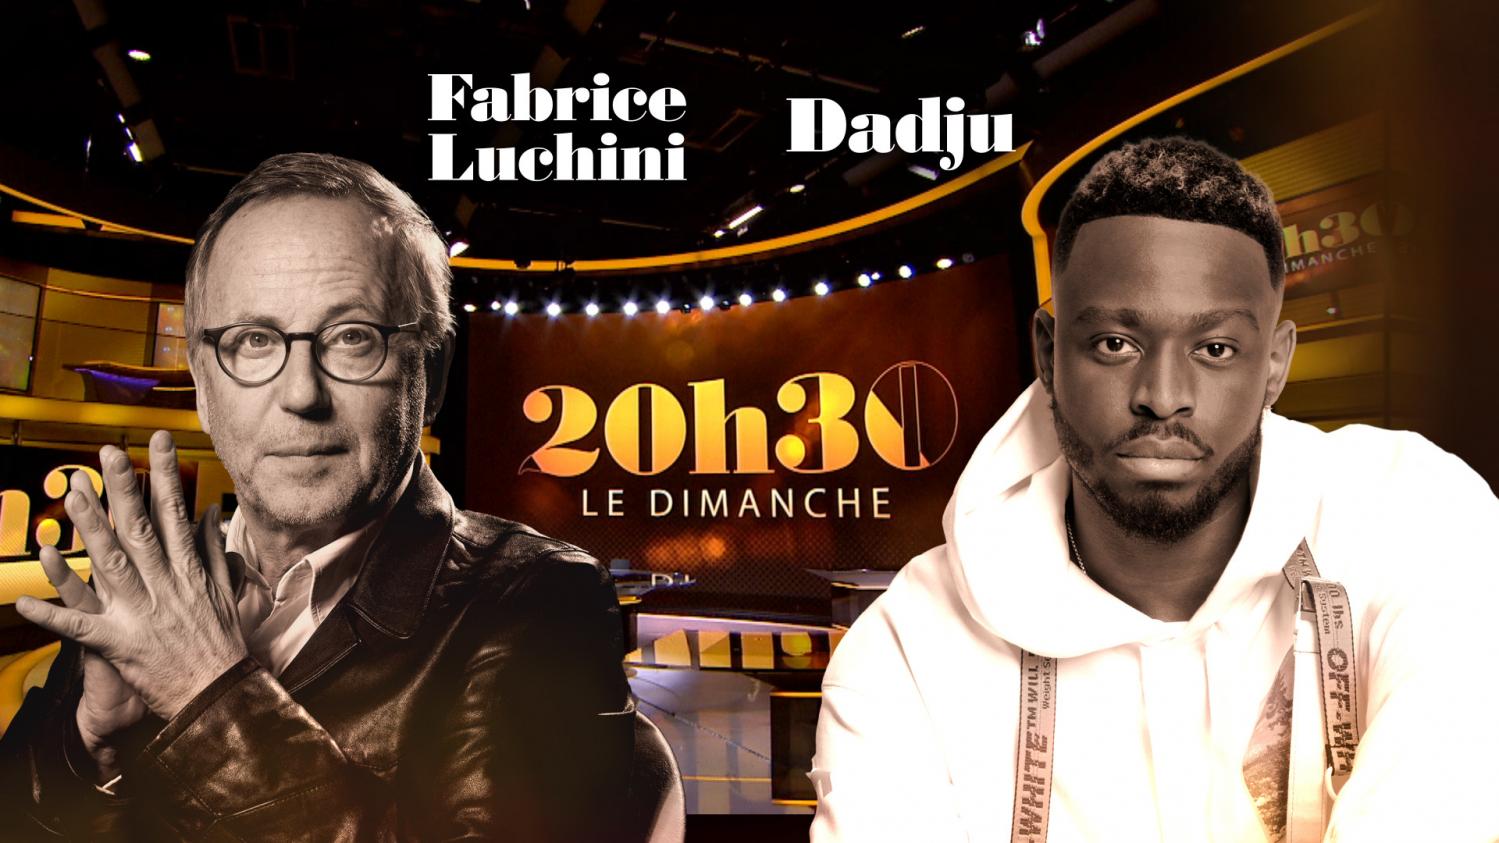 "20h30 le dimanche" avec Fabrice Luchini et Dadju - France 2 - 8 novembre 2020